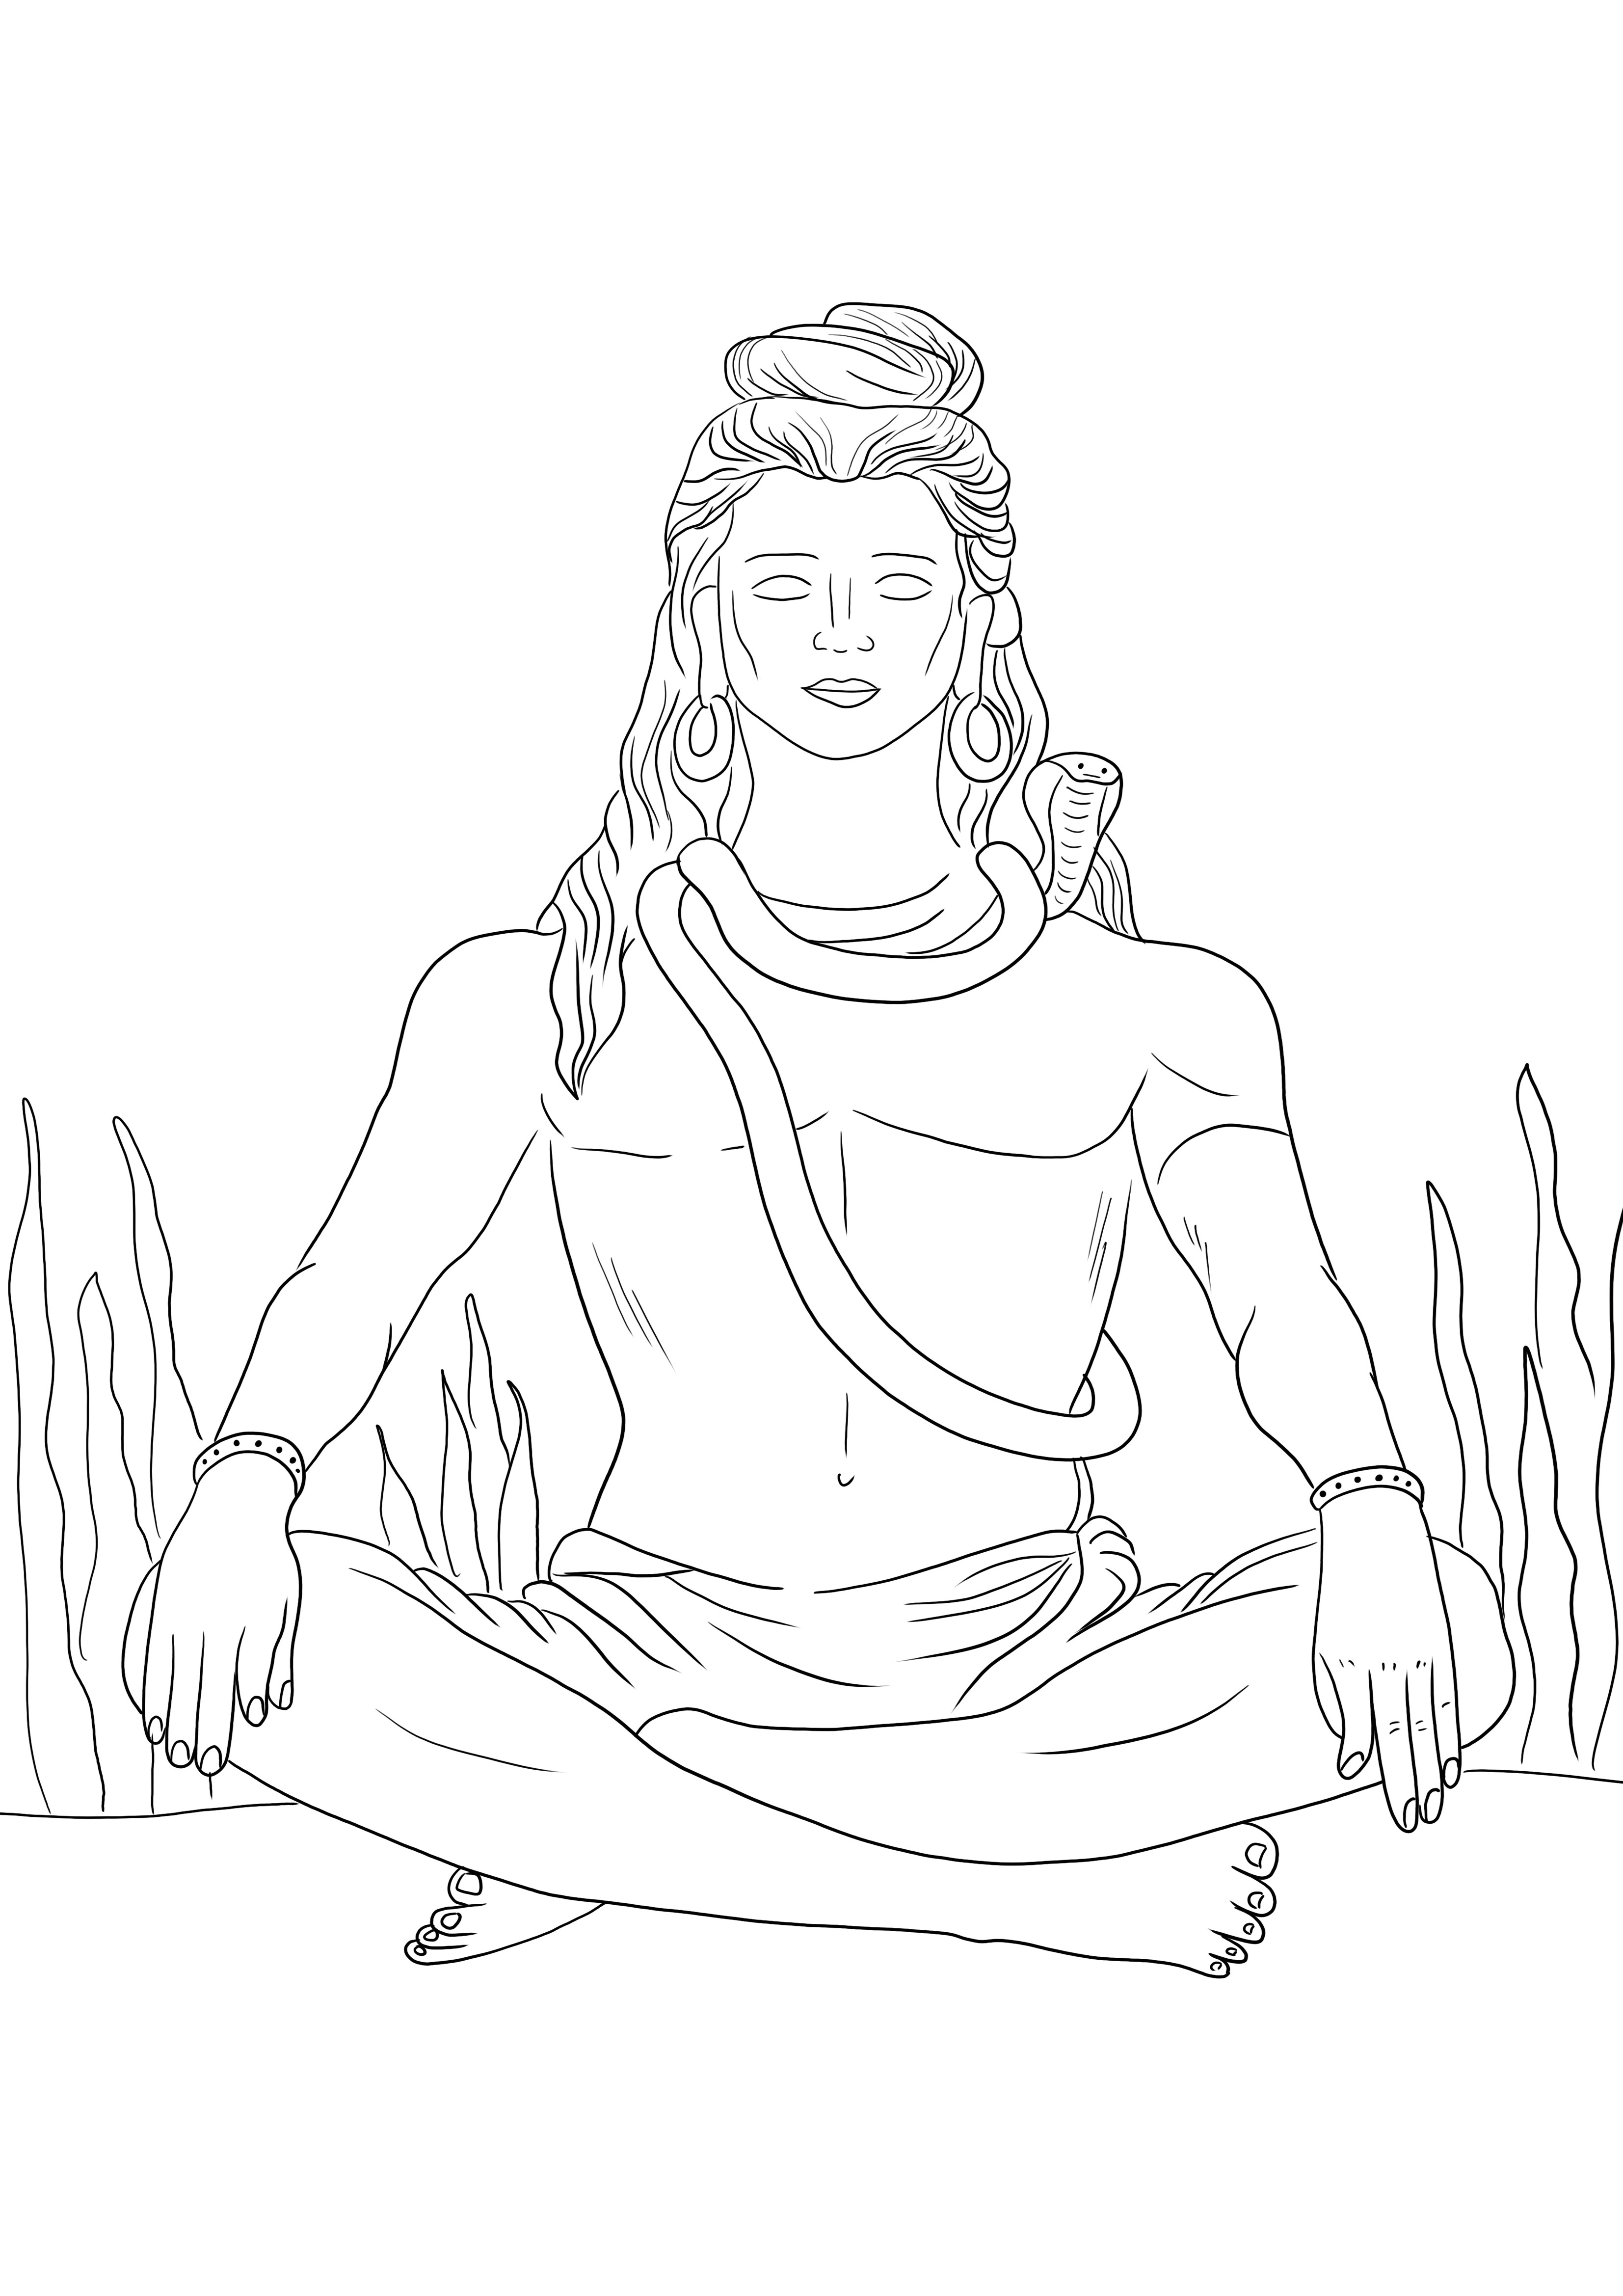 Lord Shiva è stampabile gratuitamente pronto per essere colorato e gratuito per essere stampato